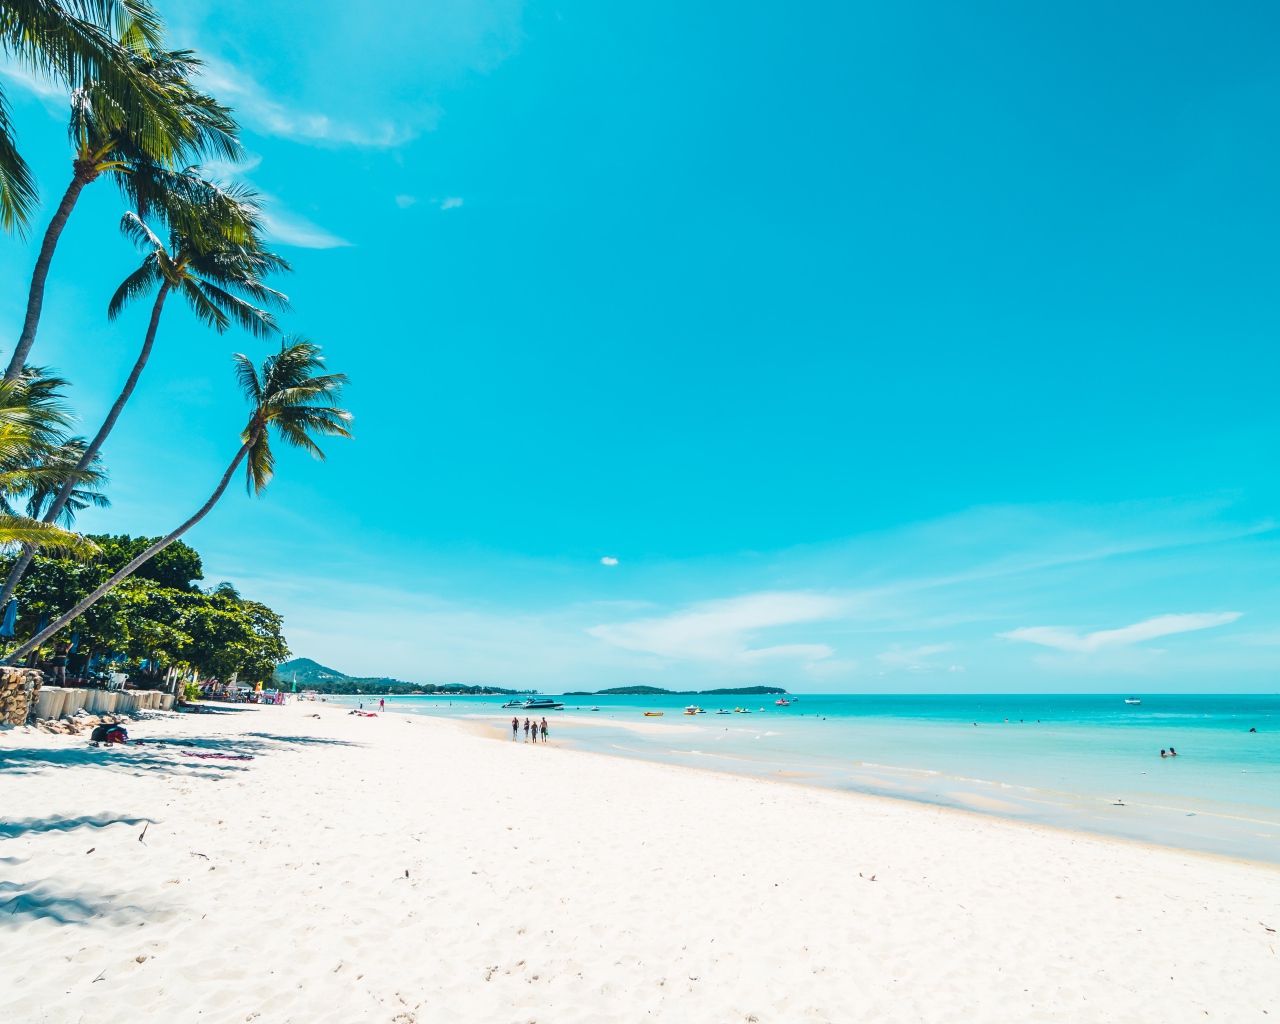 Красивое голубое небо на тропическом пляже с белым песком